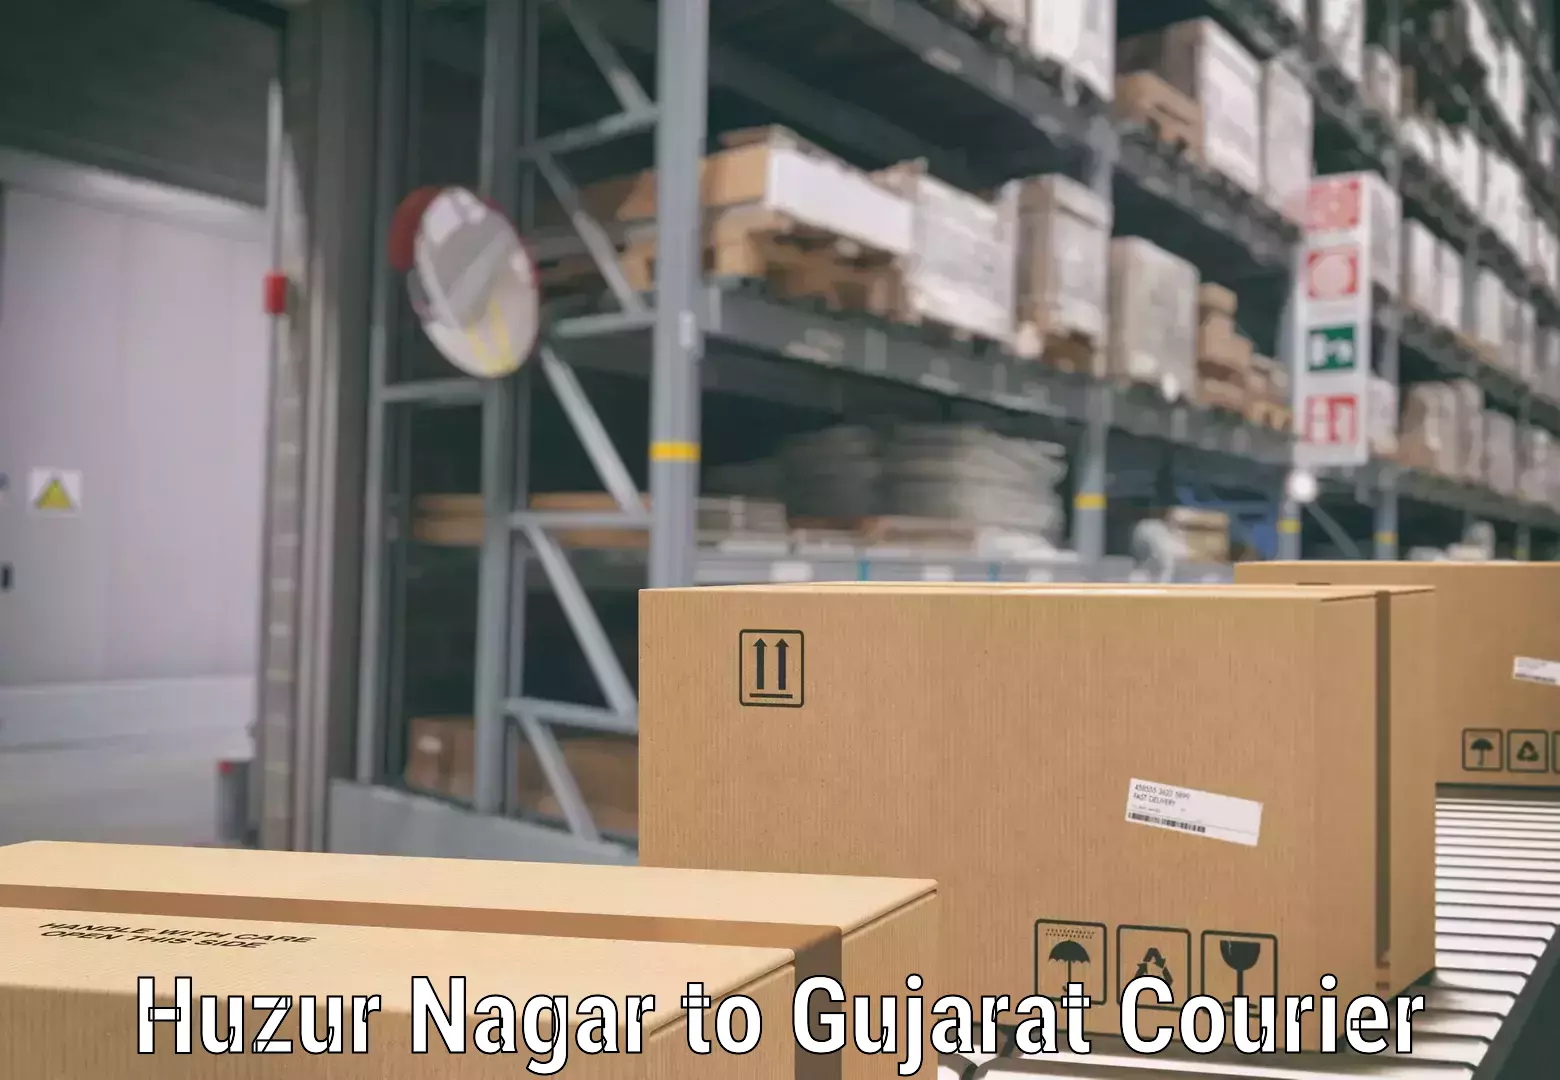 Quick luggage shipment Huzur Nagar to Gujarat